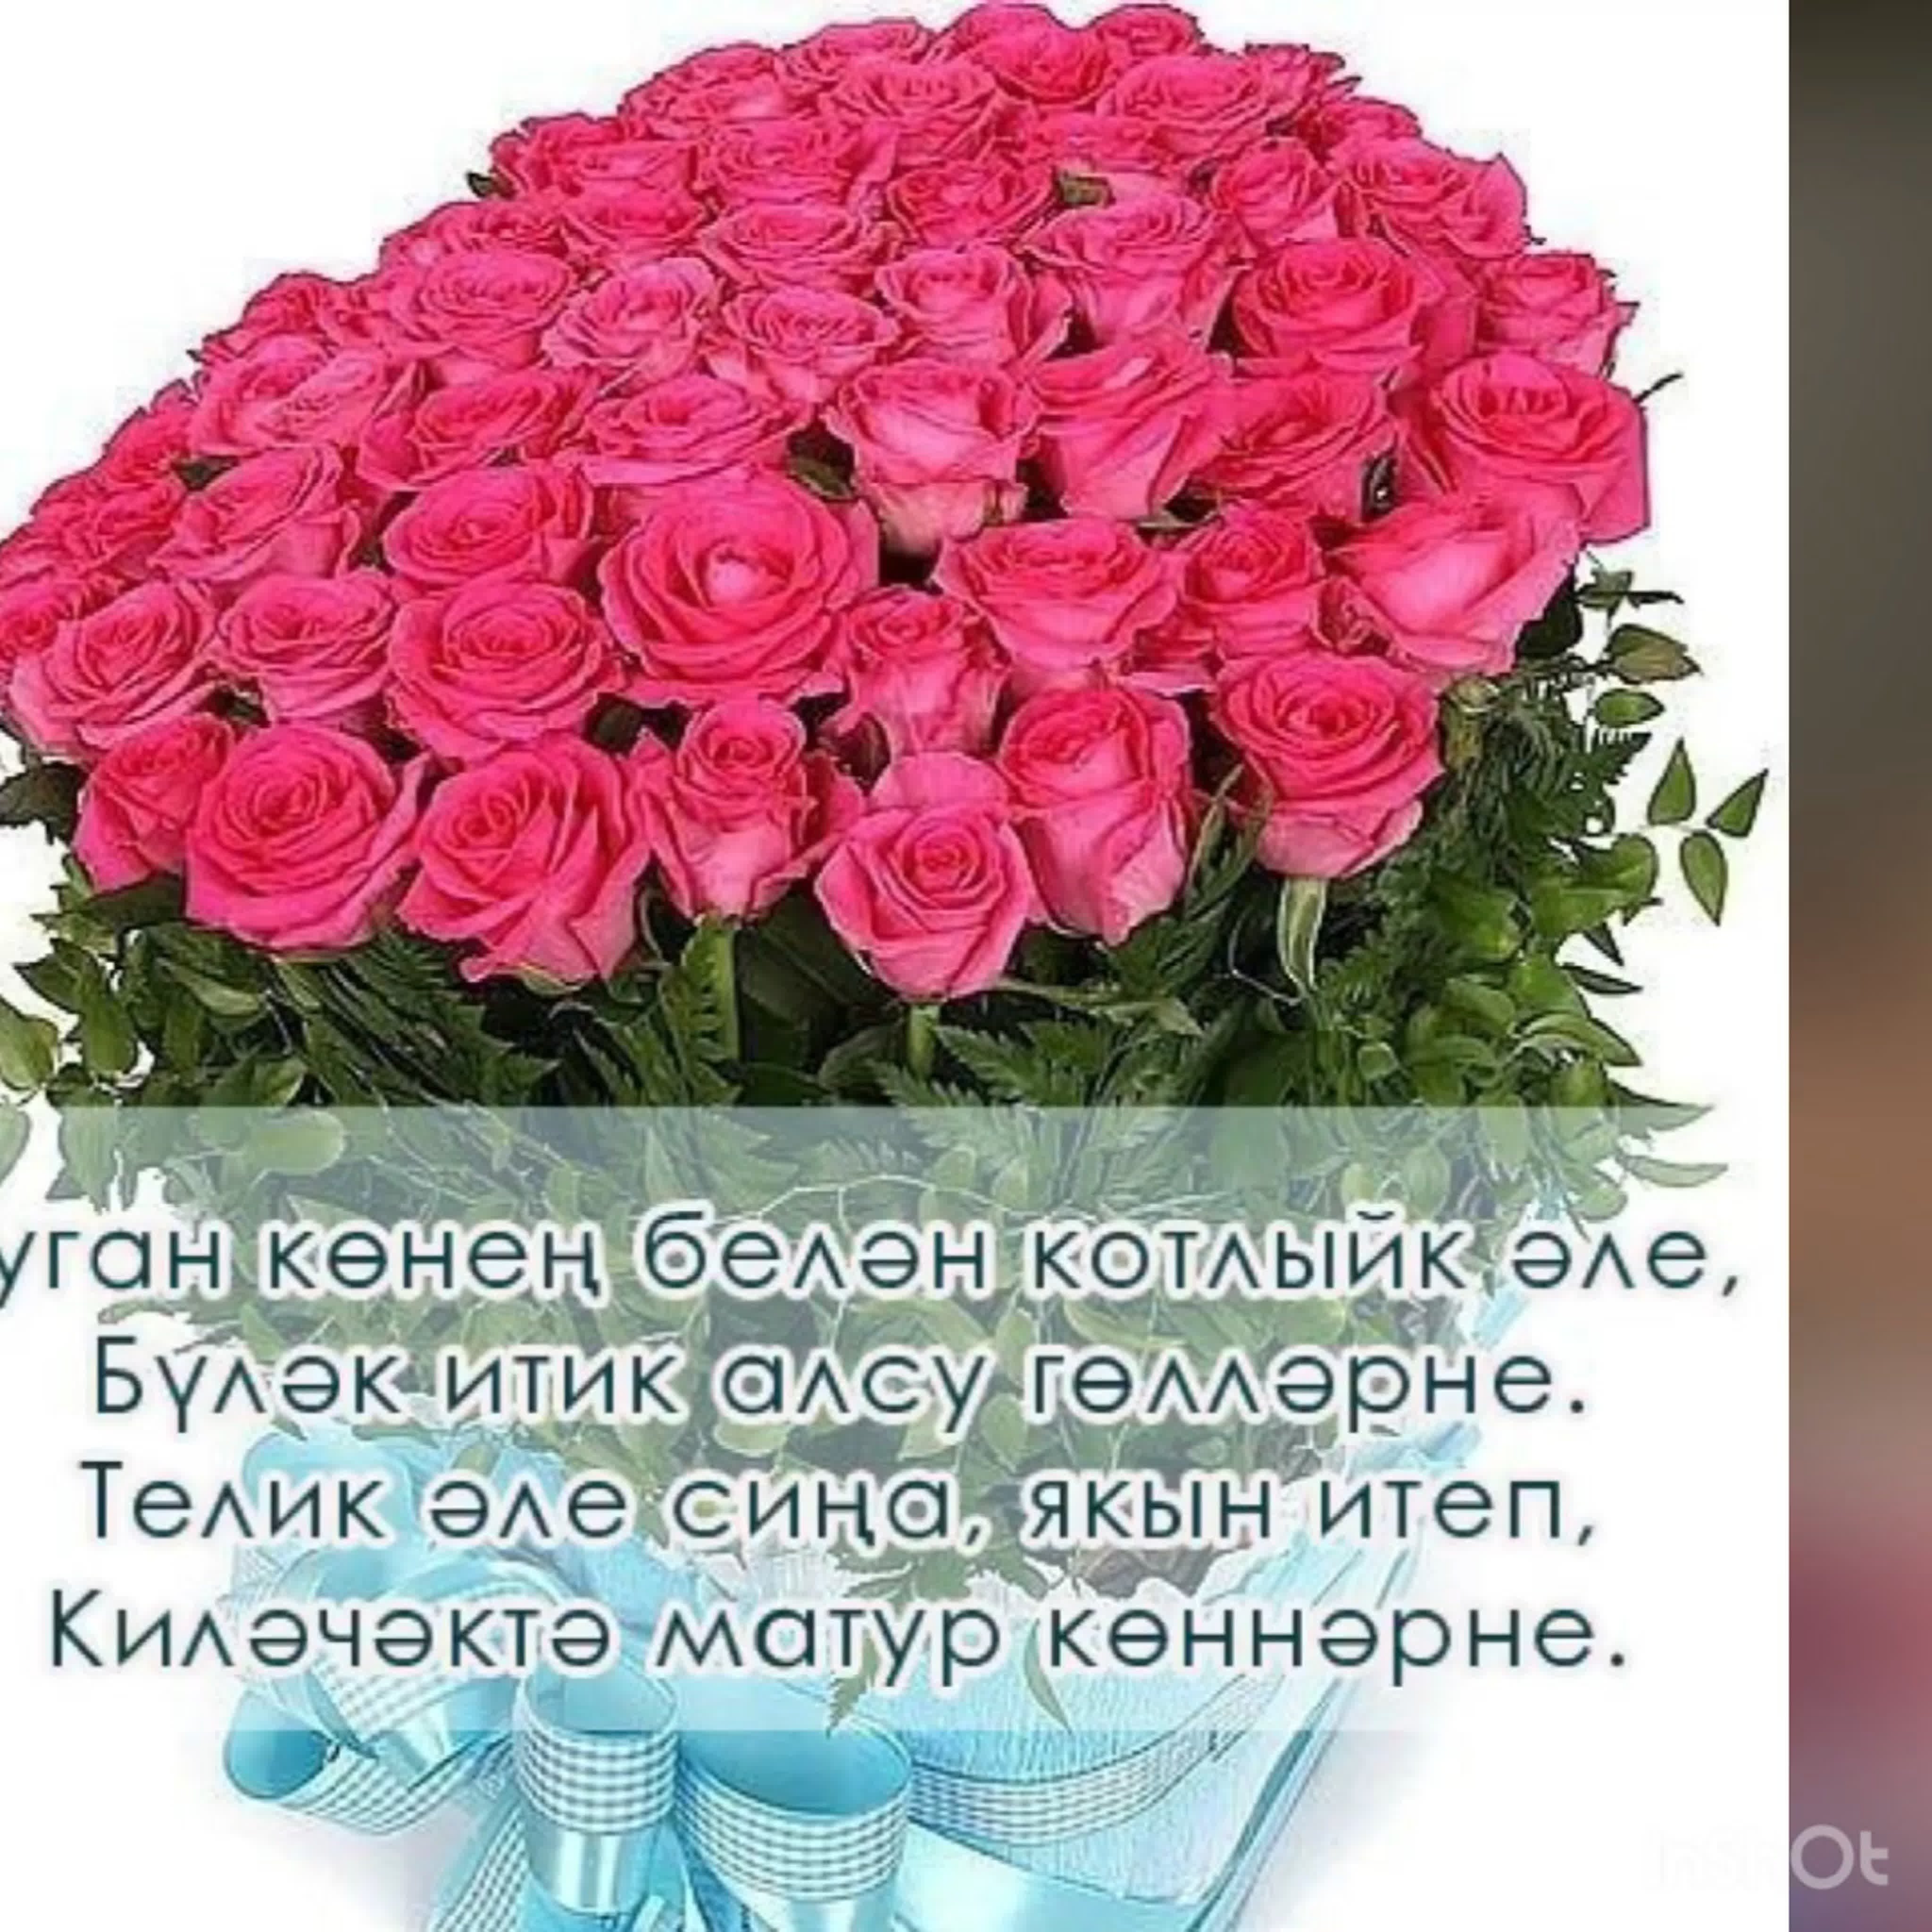 Татарские поздравления любимому. Поздравления с днём рождения на татарском языке. Поздравления с днём рождения женщине на татарском языке. Поздравления с днём рождения женщине на татарском. Поздравления с днём рождения женщине на татарском я.